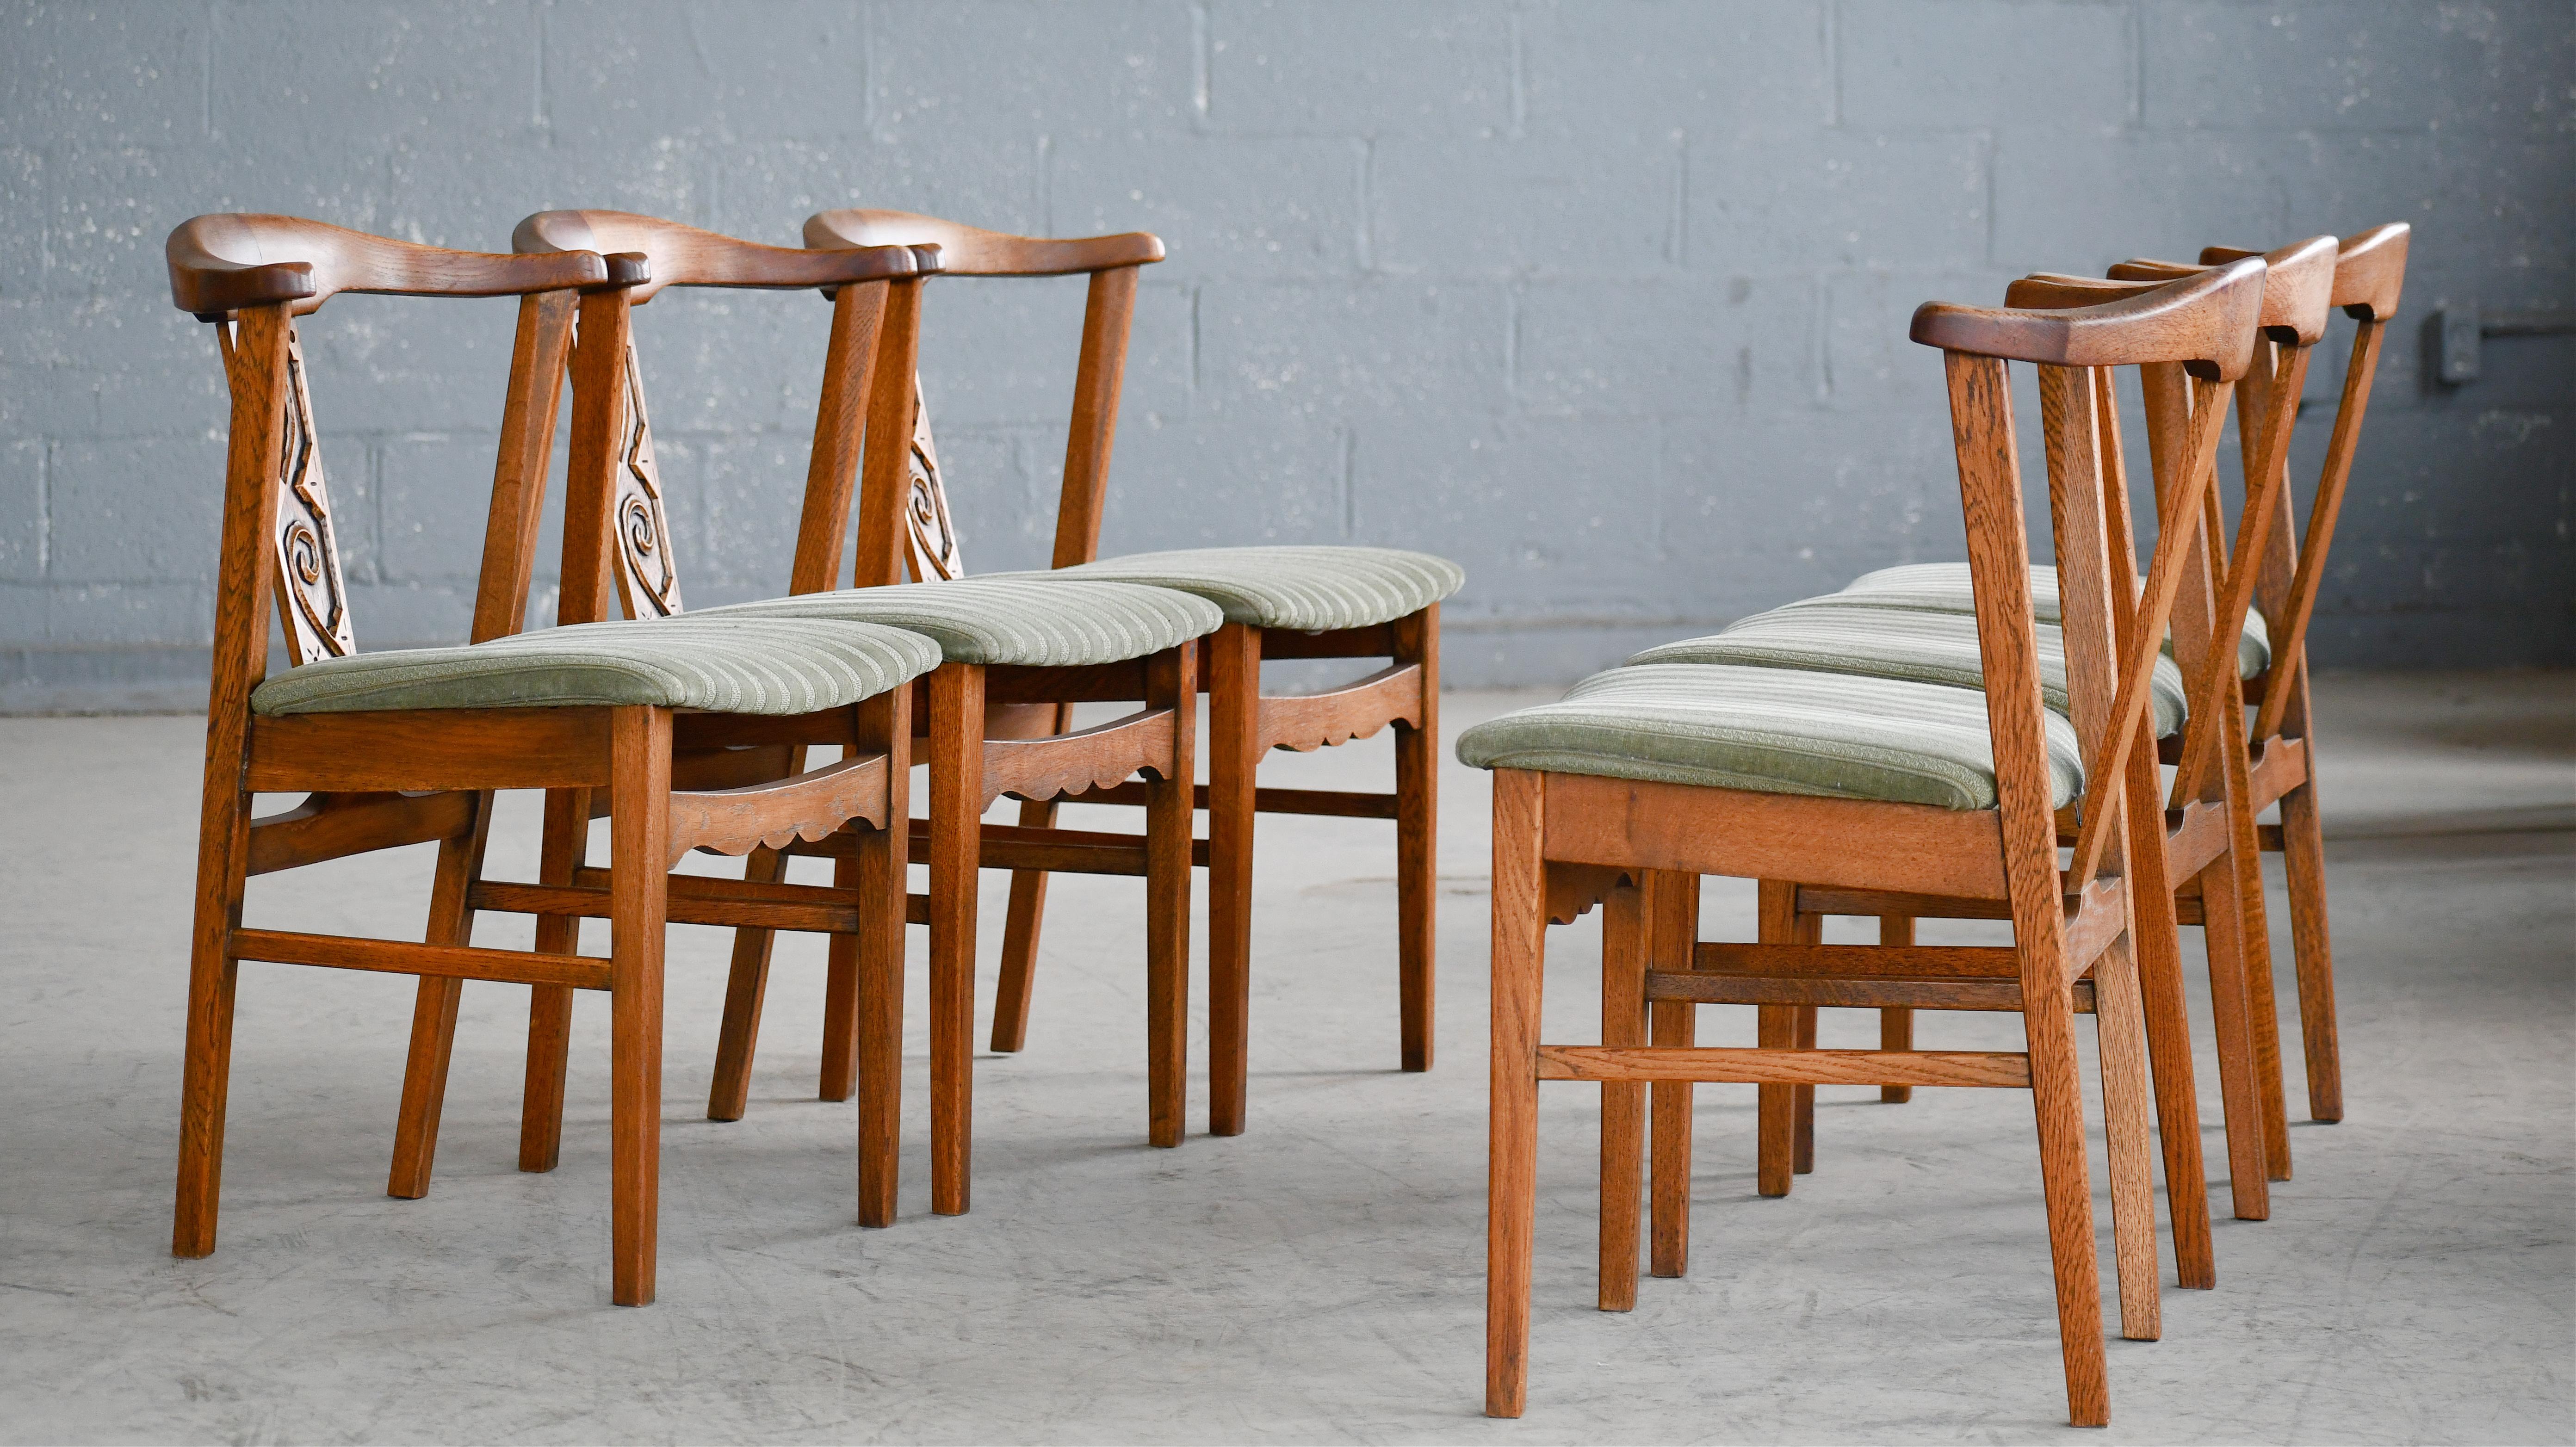 Satz von 6 dänischen Eichenstühlen, die Henning Kjærnulf zugeschrieben werden, hergestellt in den 1960er Jahren und geschnitzt in einem brutalistischen Design in massiver Eiche.  Sehr typisch für die Entwürfe von Kjærnulf, der dafür bekannt war, den